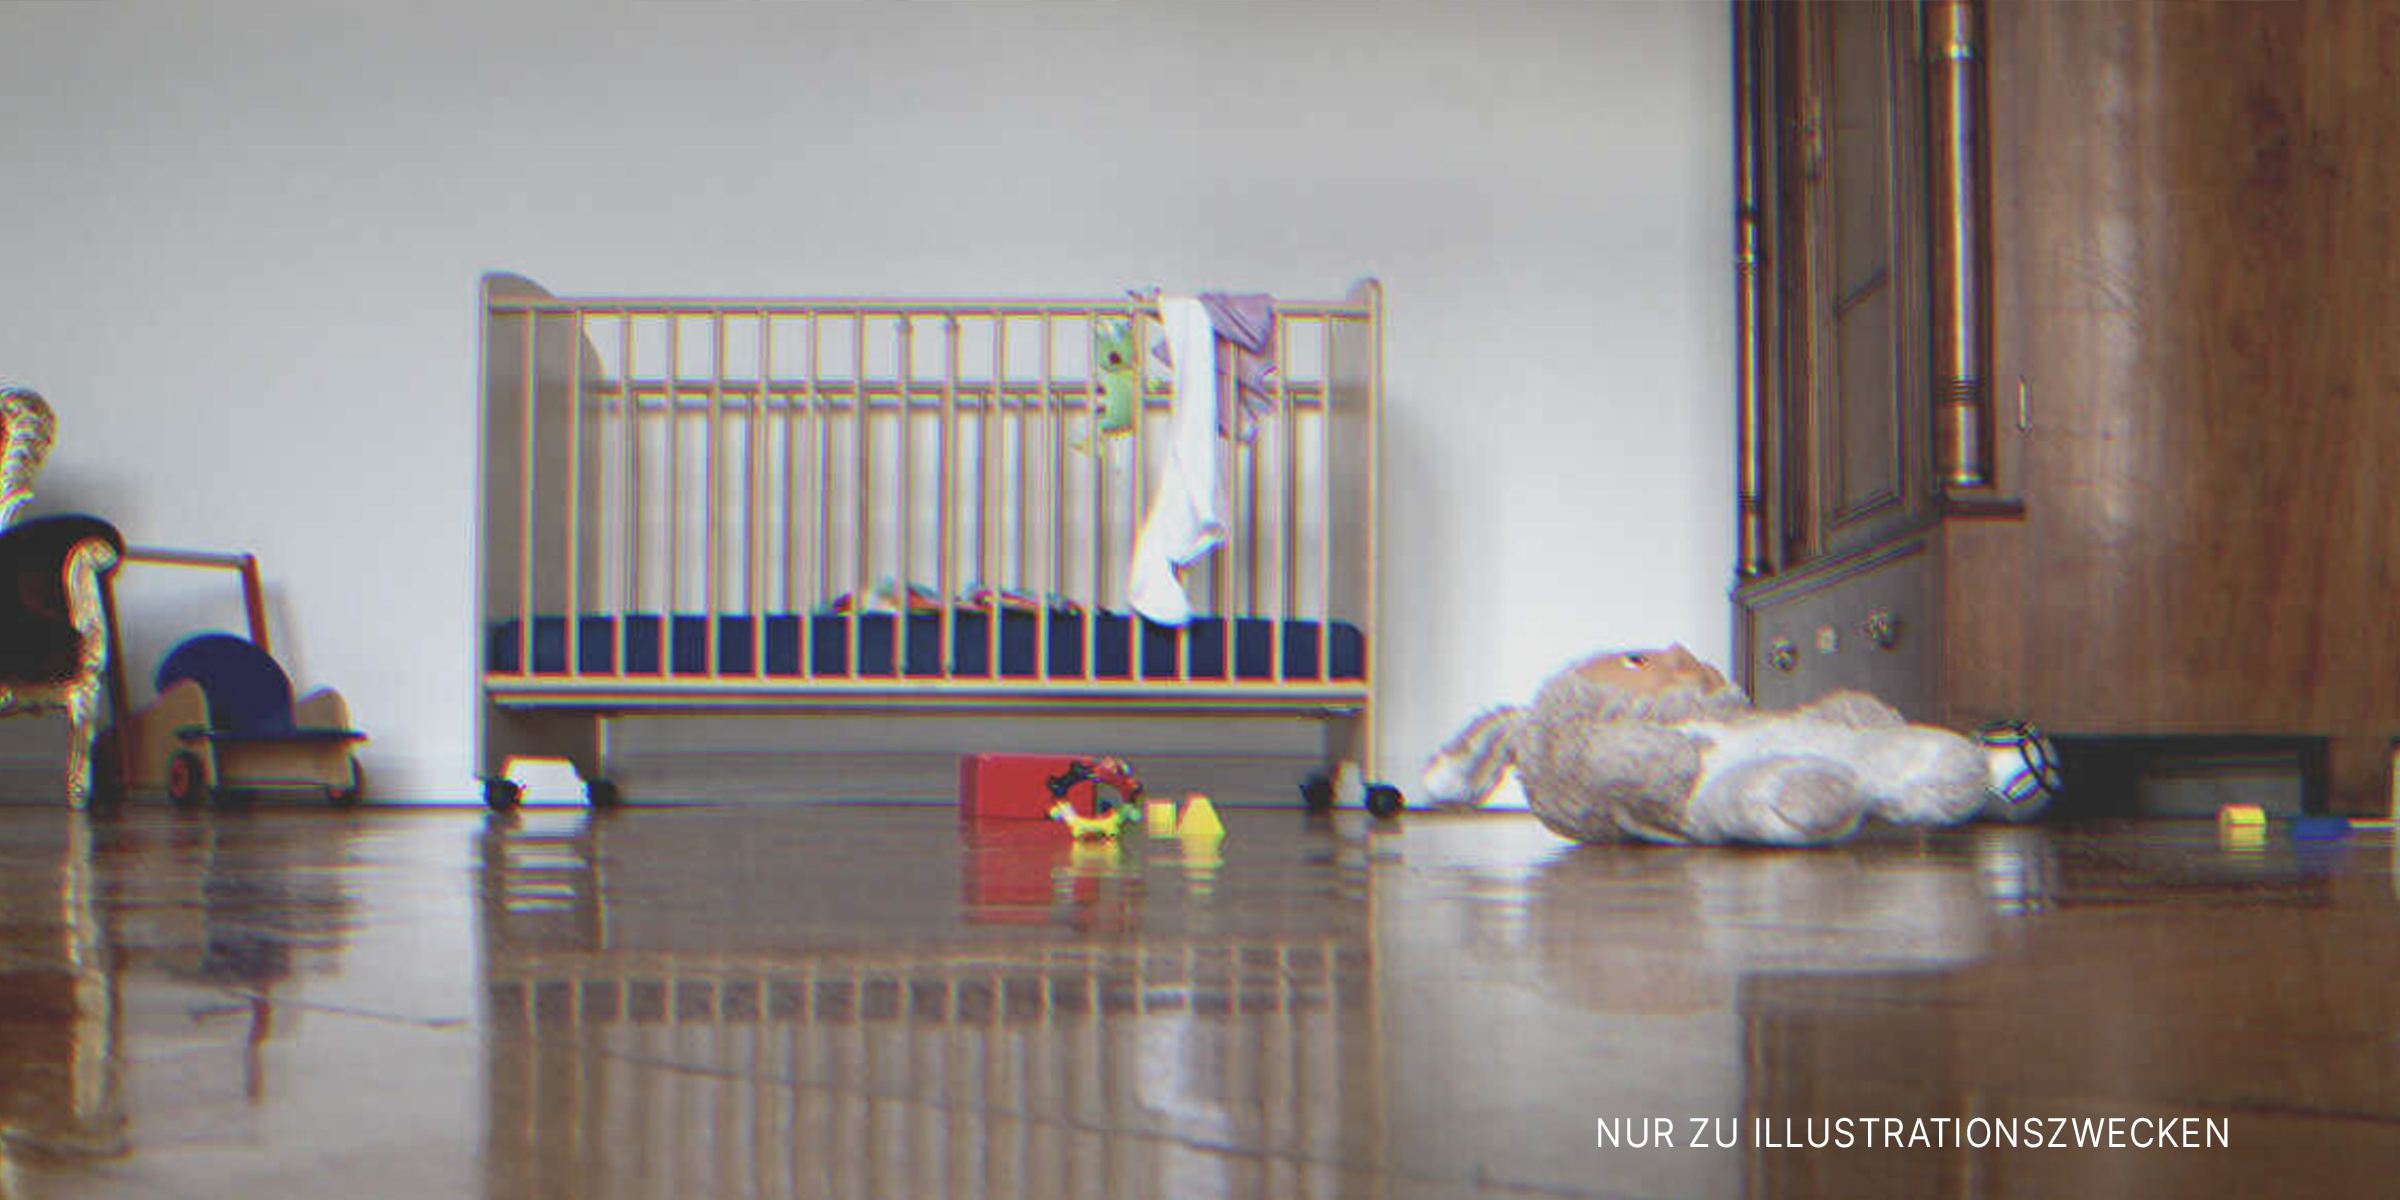 Ein Babybettchen in einem leeren Raum | Quelle: Getty Images